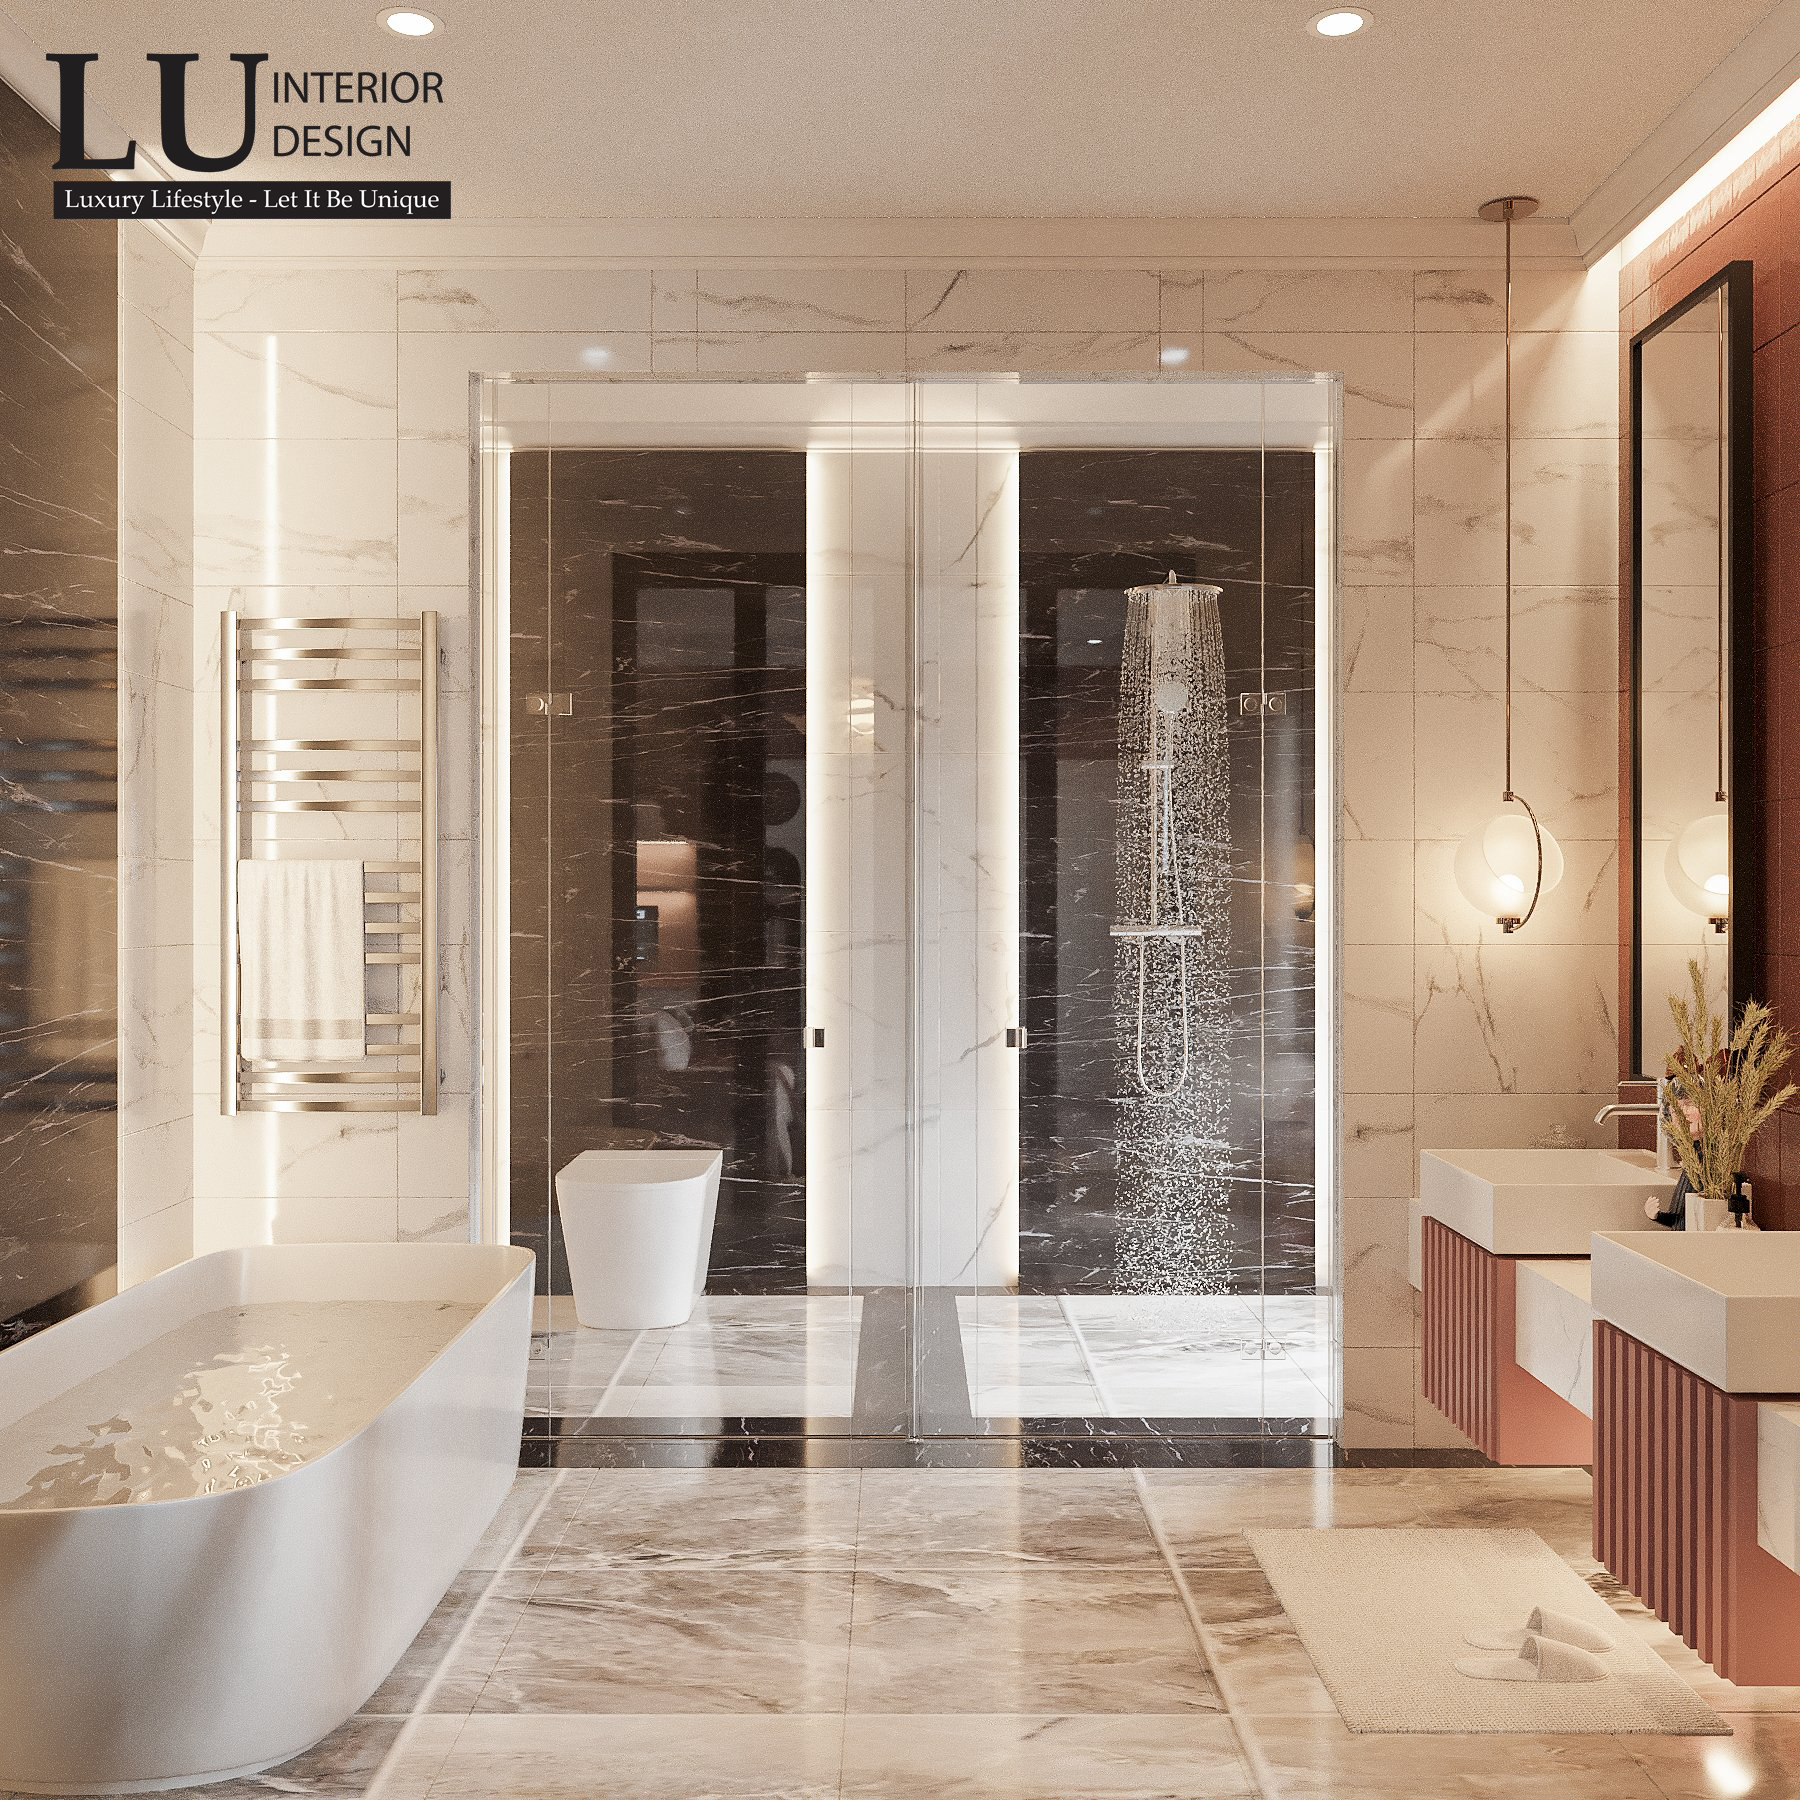 Thiết kế nội thất phòng vệ sinh cũng ngập tràn sắc hồng, tones-sur-tone với phòng ngủ.